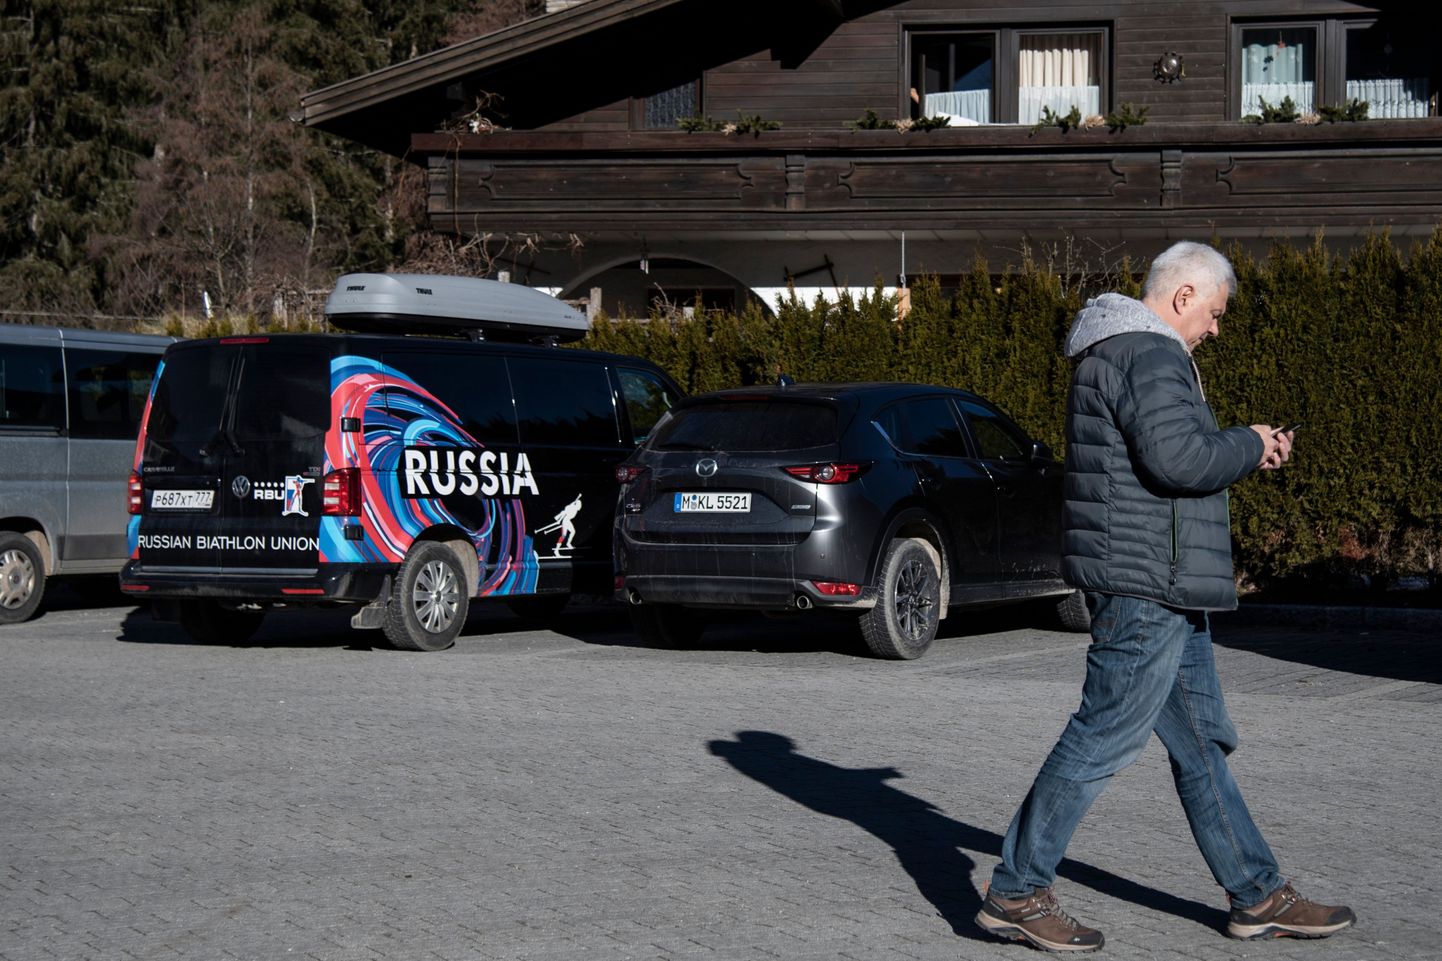 Krievijas Biatlona federācijas dienesta auto pie viesnīcas Itālijā.